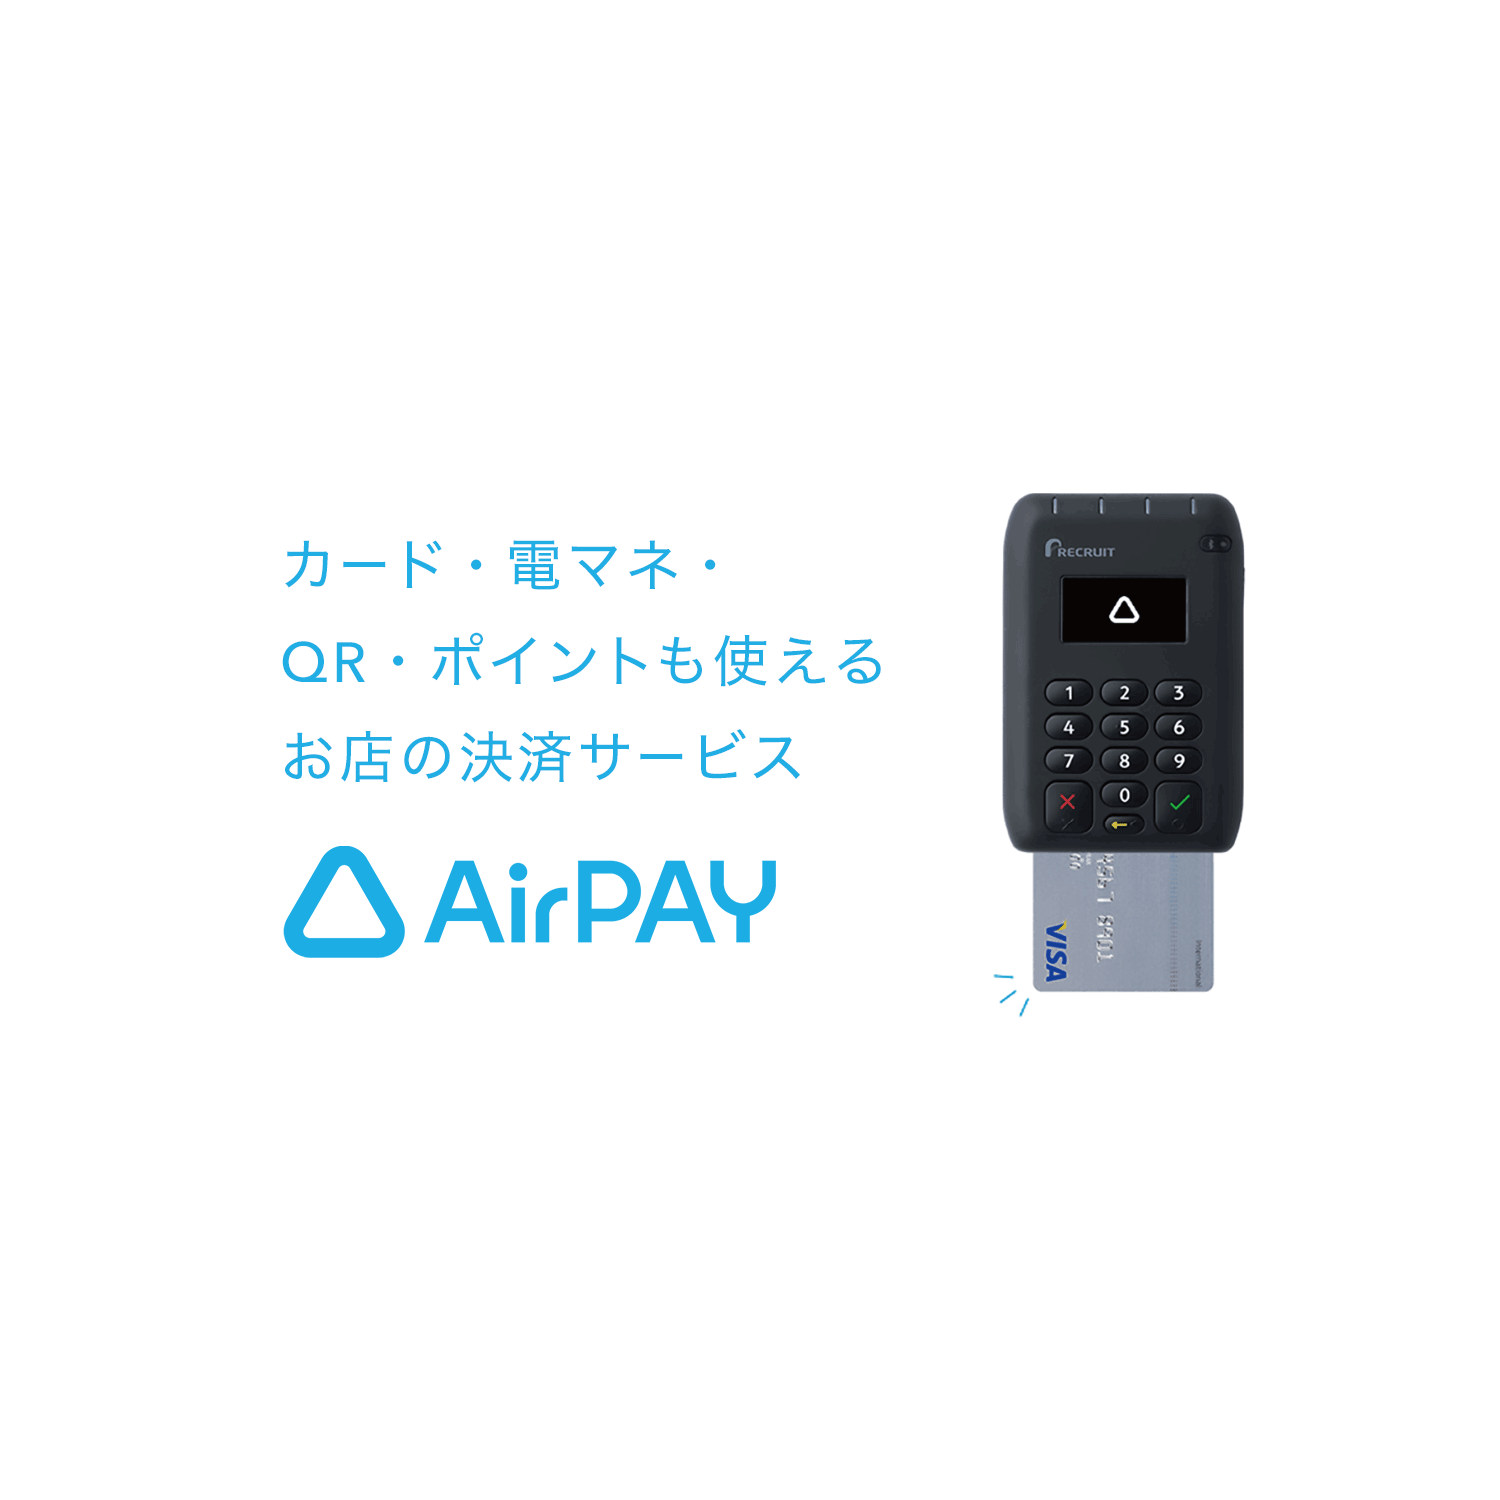 キャッシュレス導入0円キャンペーン | エアペイ カード・電マネ・QR・ポイントも使えるお店の決済サービス